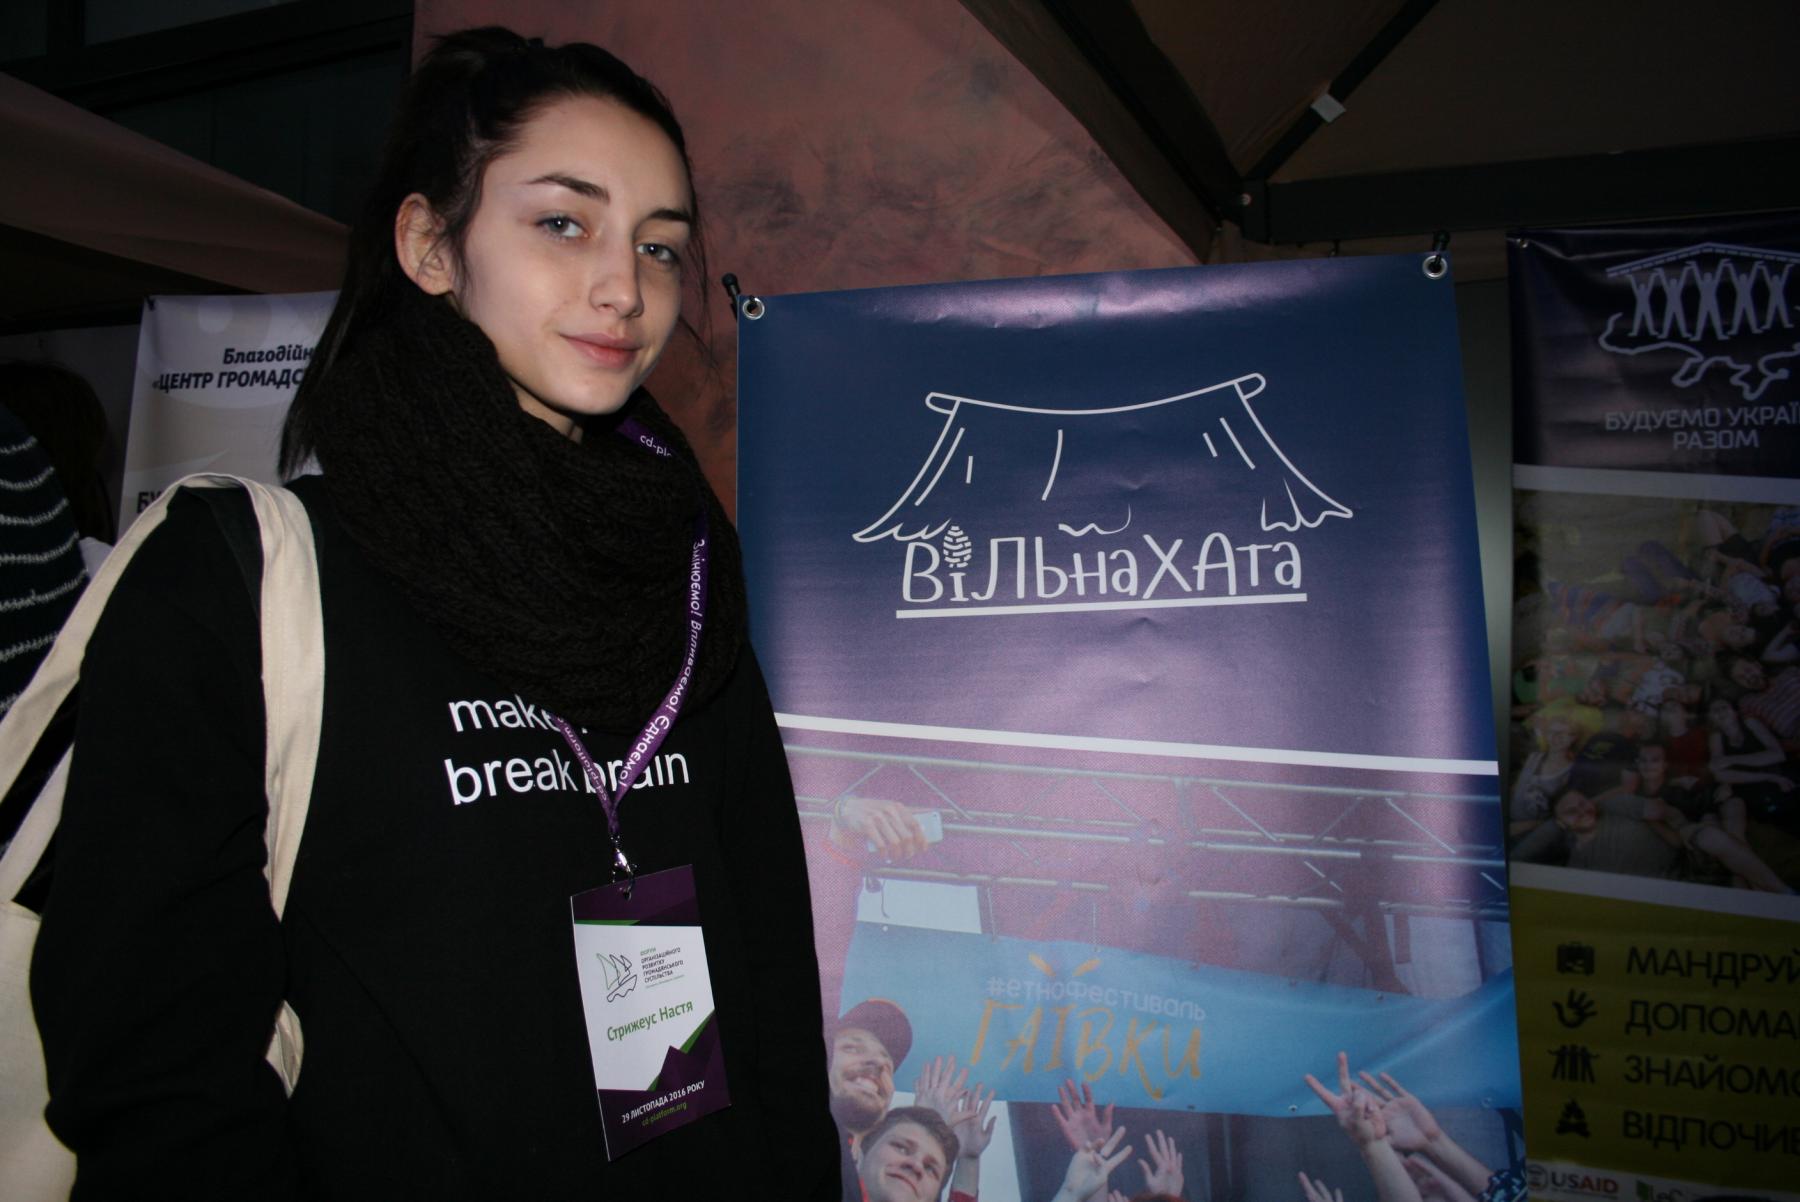 Настя Стрижеус, активист молодежной платформы "Вільна Хата"